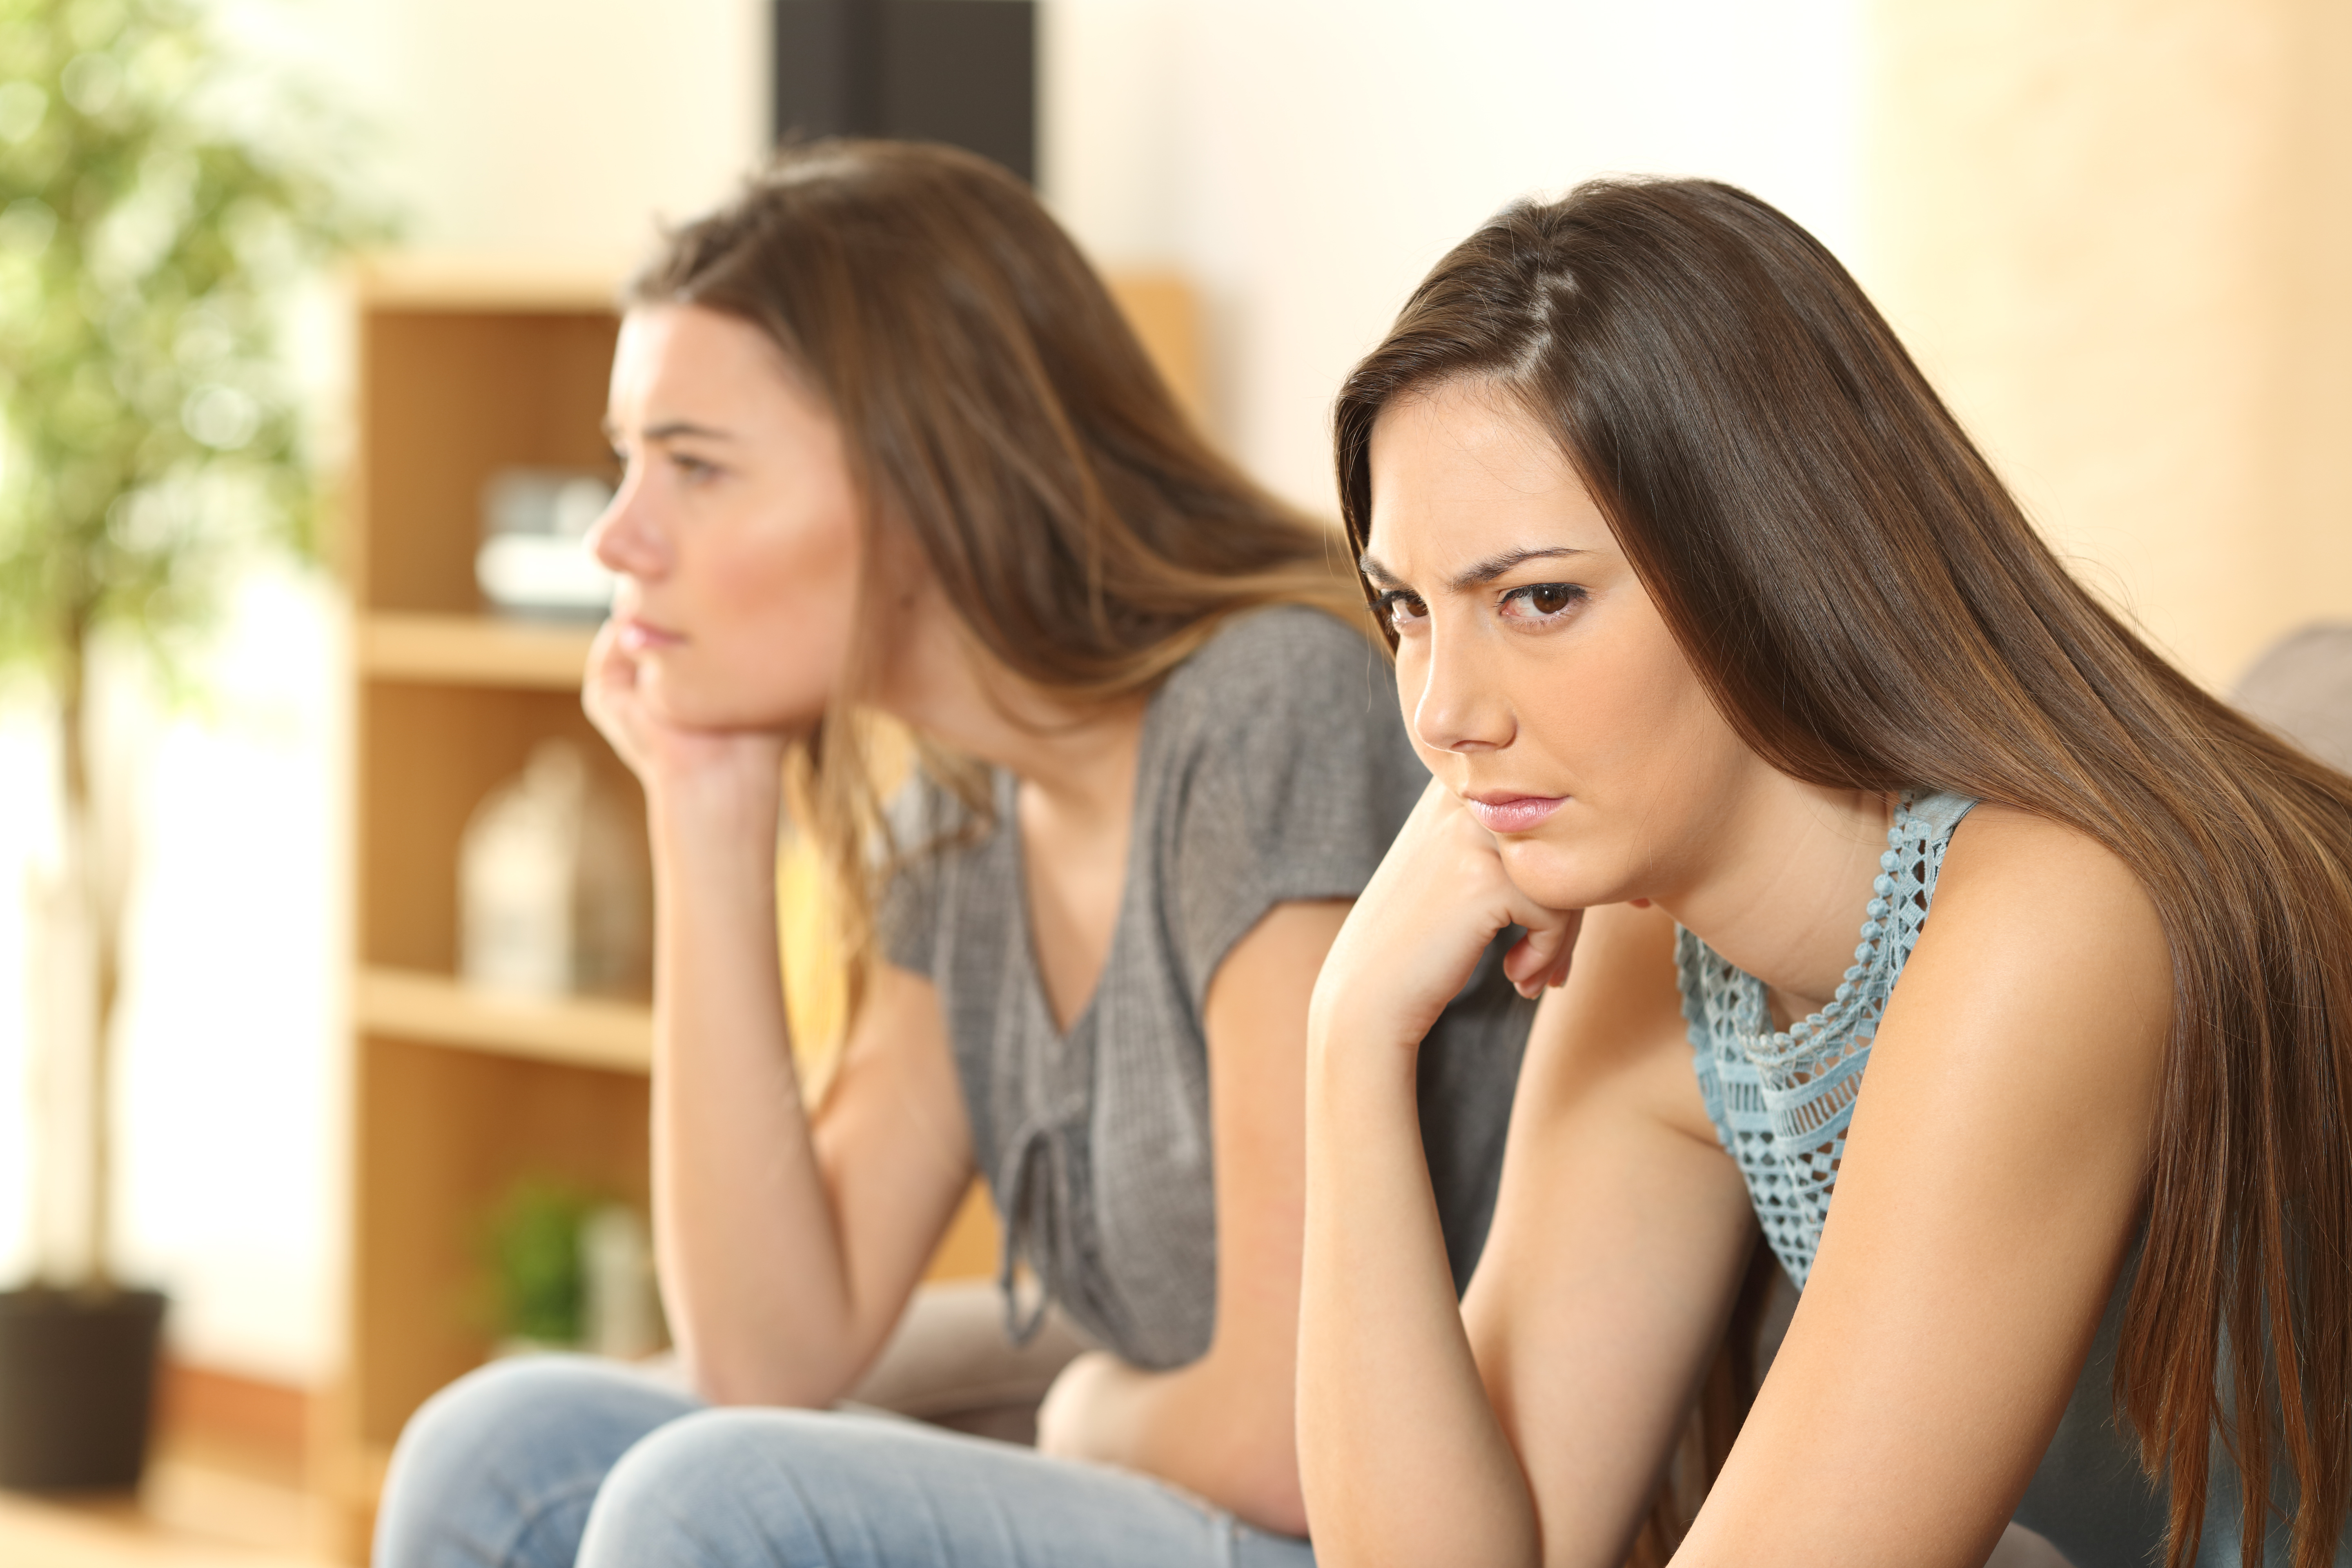 Zwei Schwestern sitzen auf einem Sofa und reden nicht miteinander | Quelle: Shutterstock